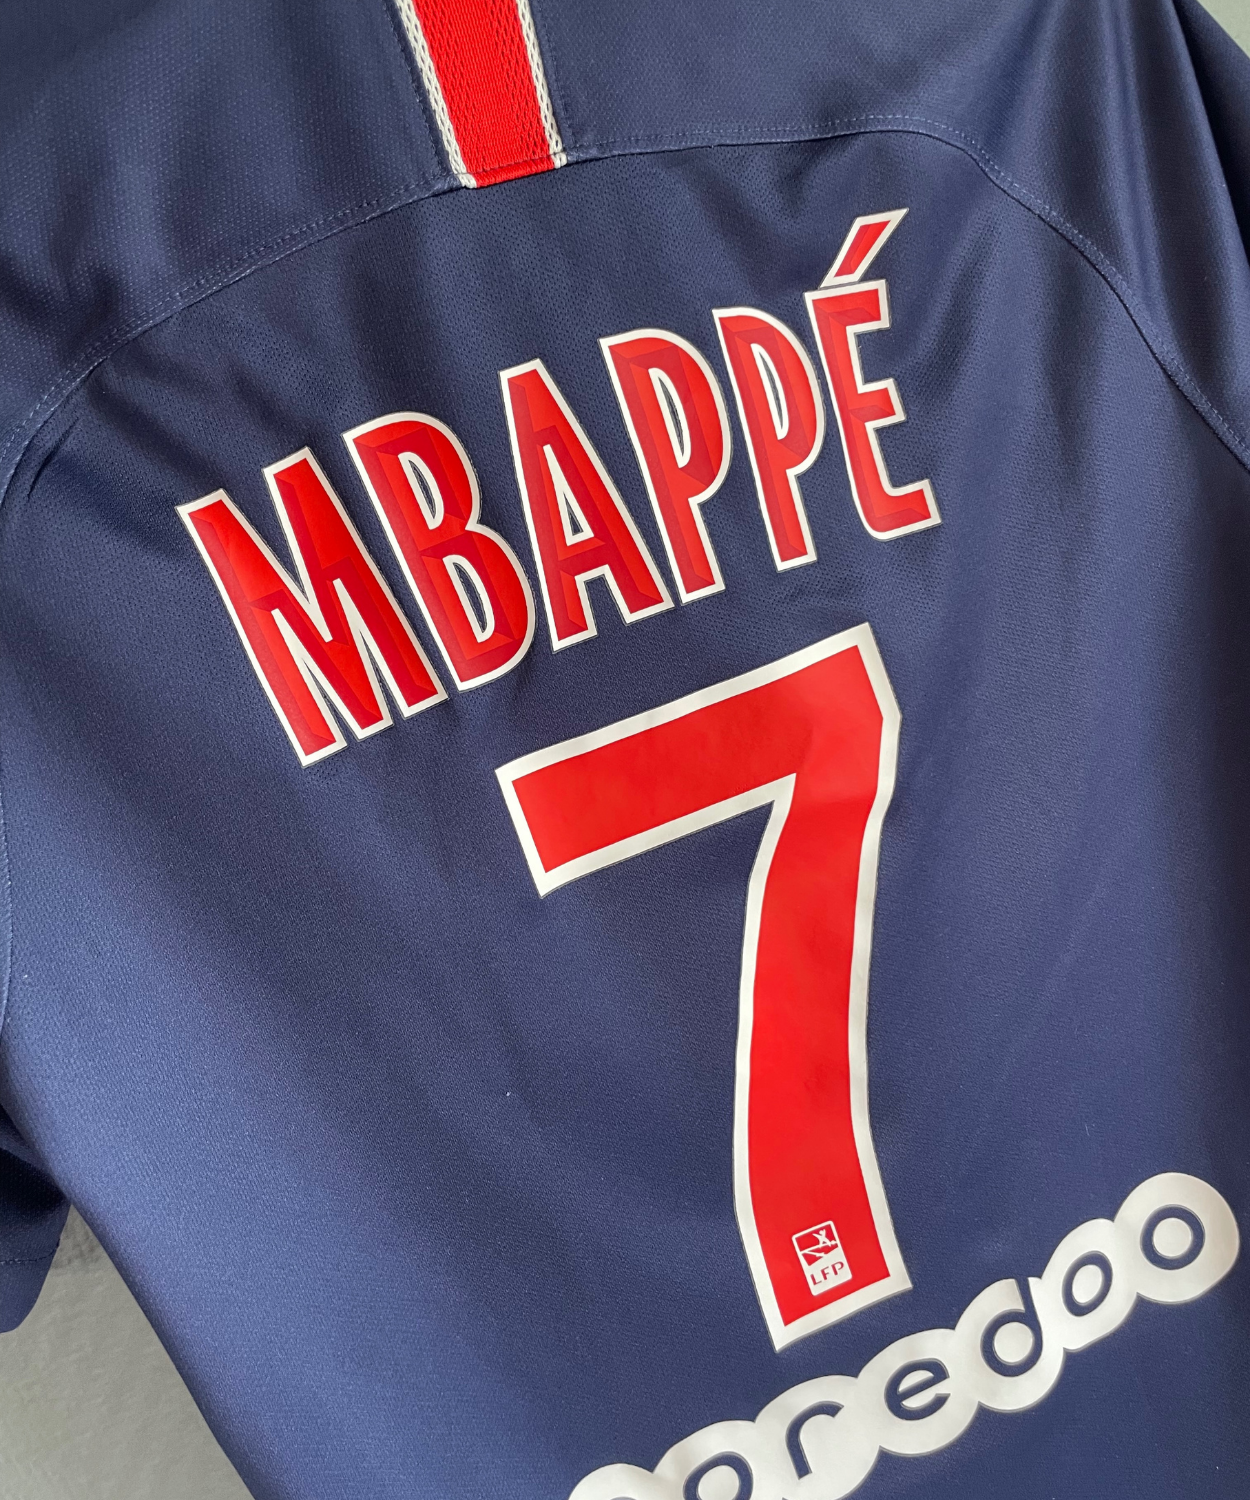 Paris Saint-Germain 2018/19 Mbappé Home Kit (S)